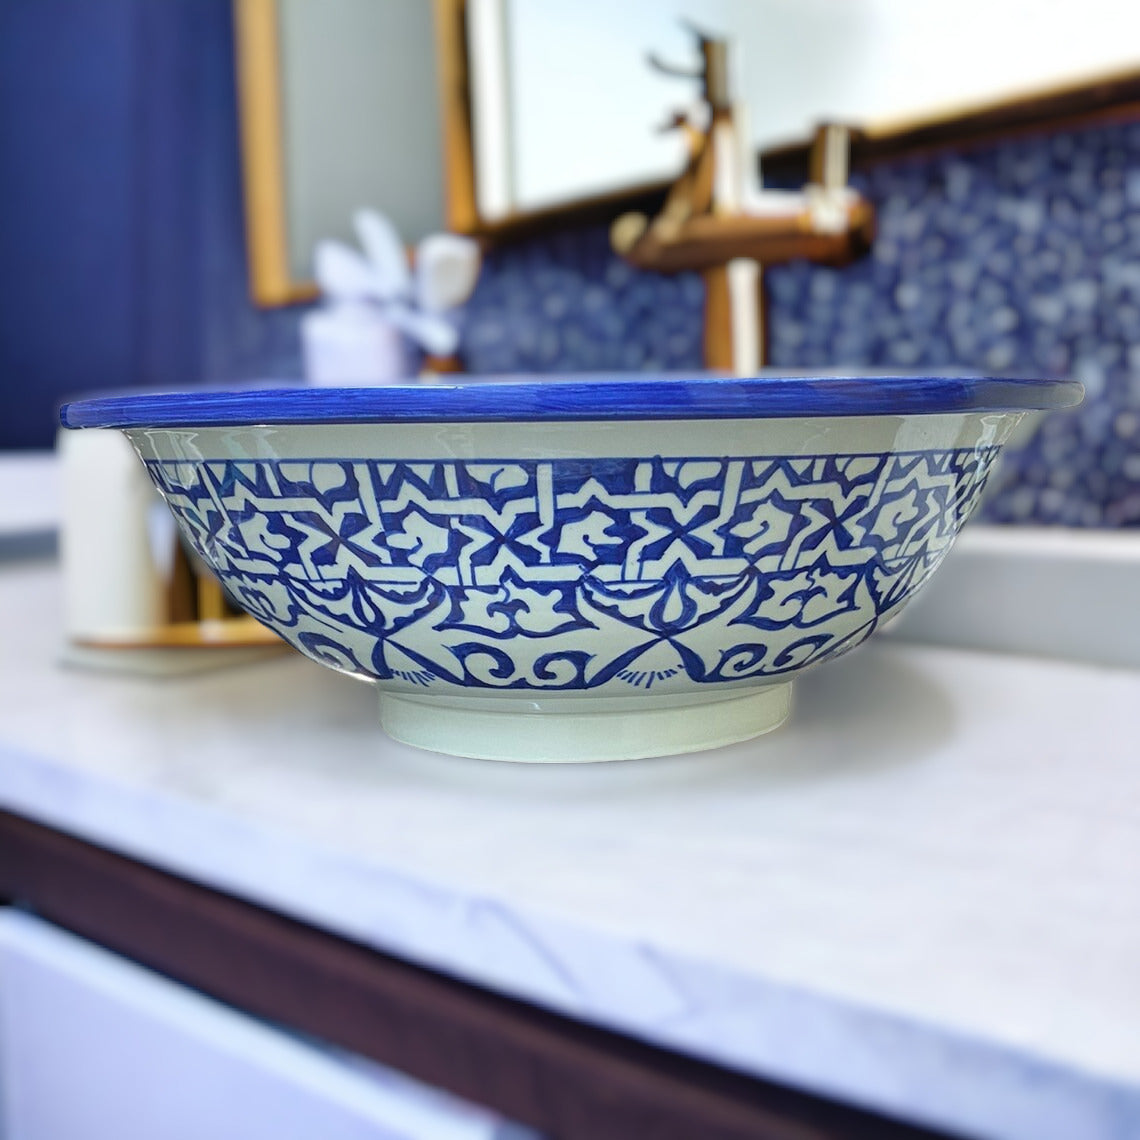 Moroccan sink | moroccan ceramic sink | bathroom sink | moroccan bathroom basin | cloakroom basin | Bleu sink #19